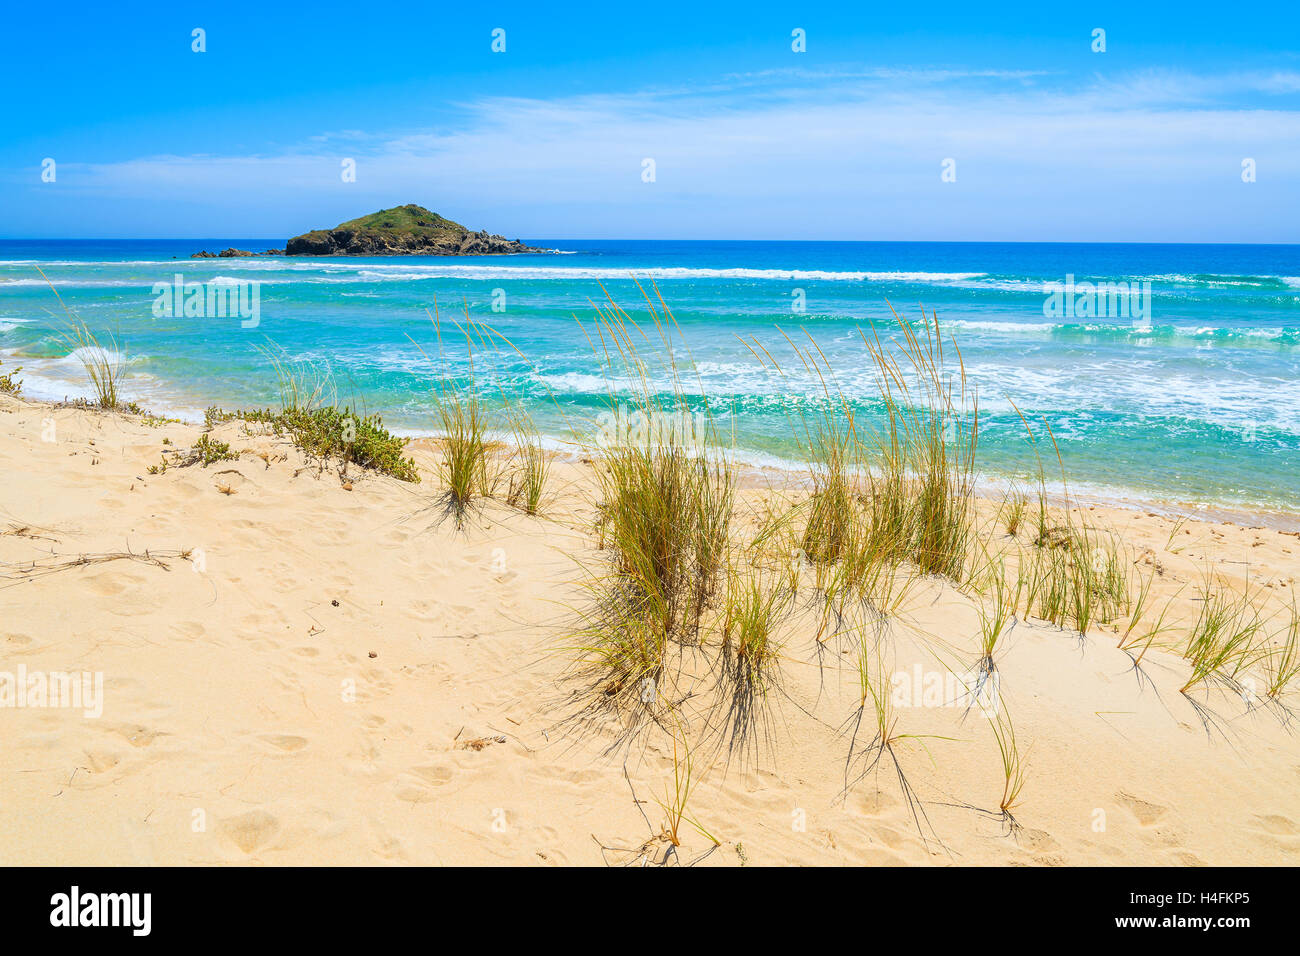 Erba sulle dune di sabbia a Chia spiaggia e mare turchese, vista l'isola di Sardegna, Italia Foto Stock